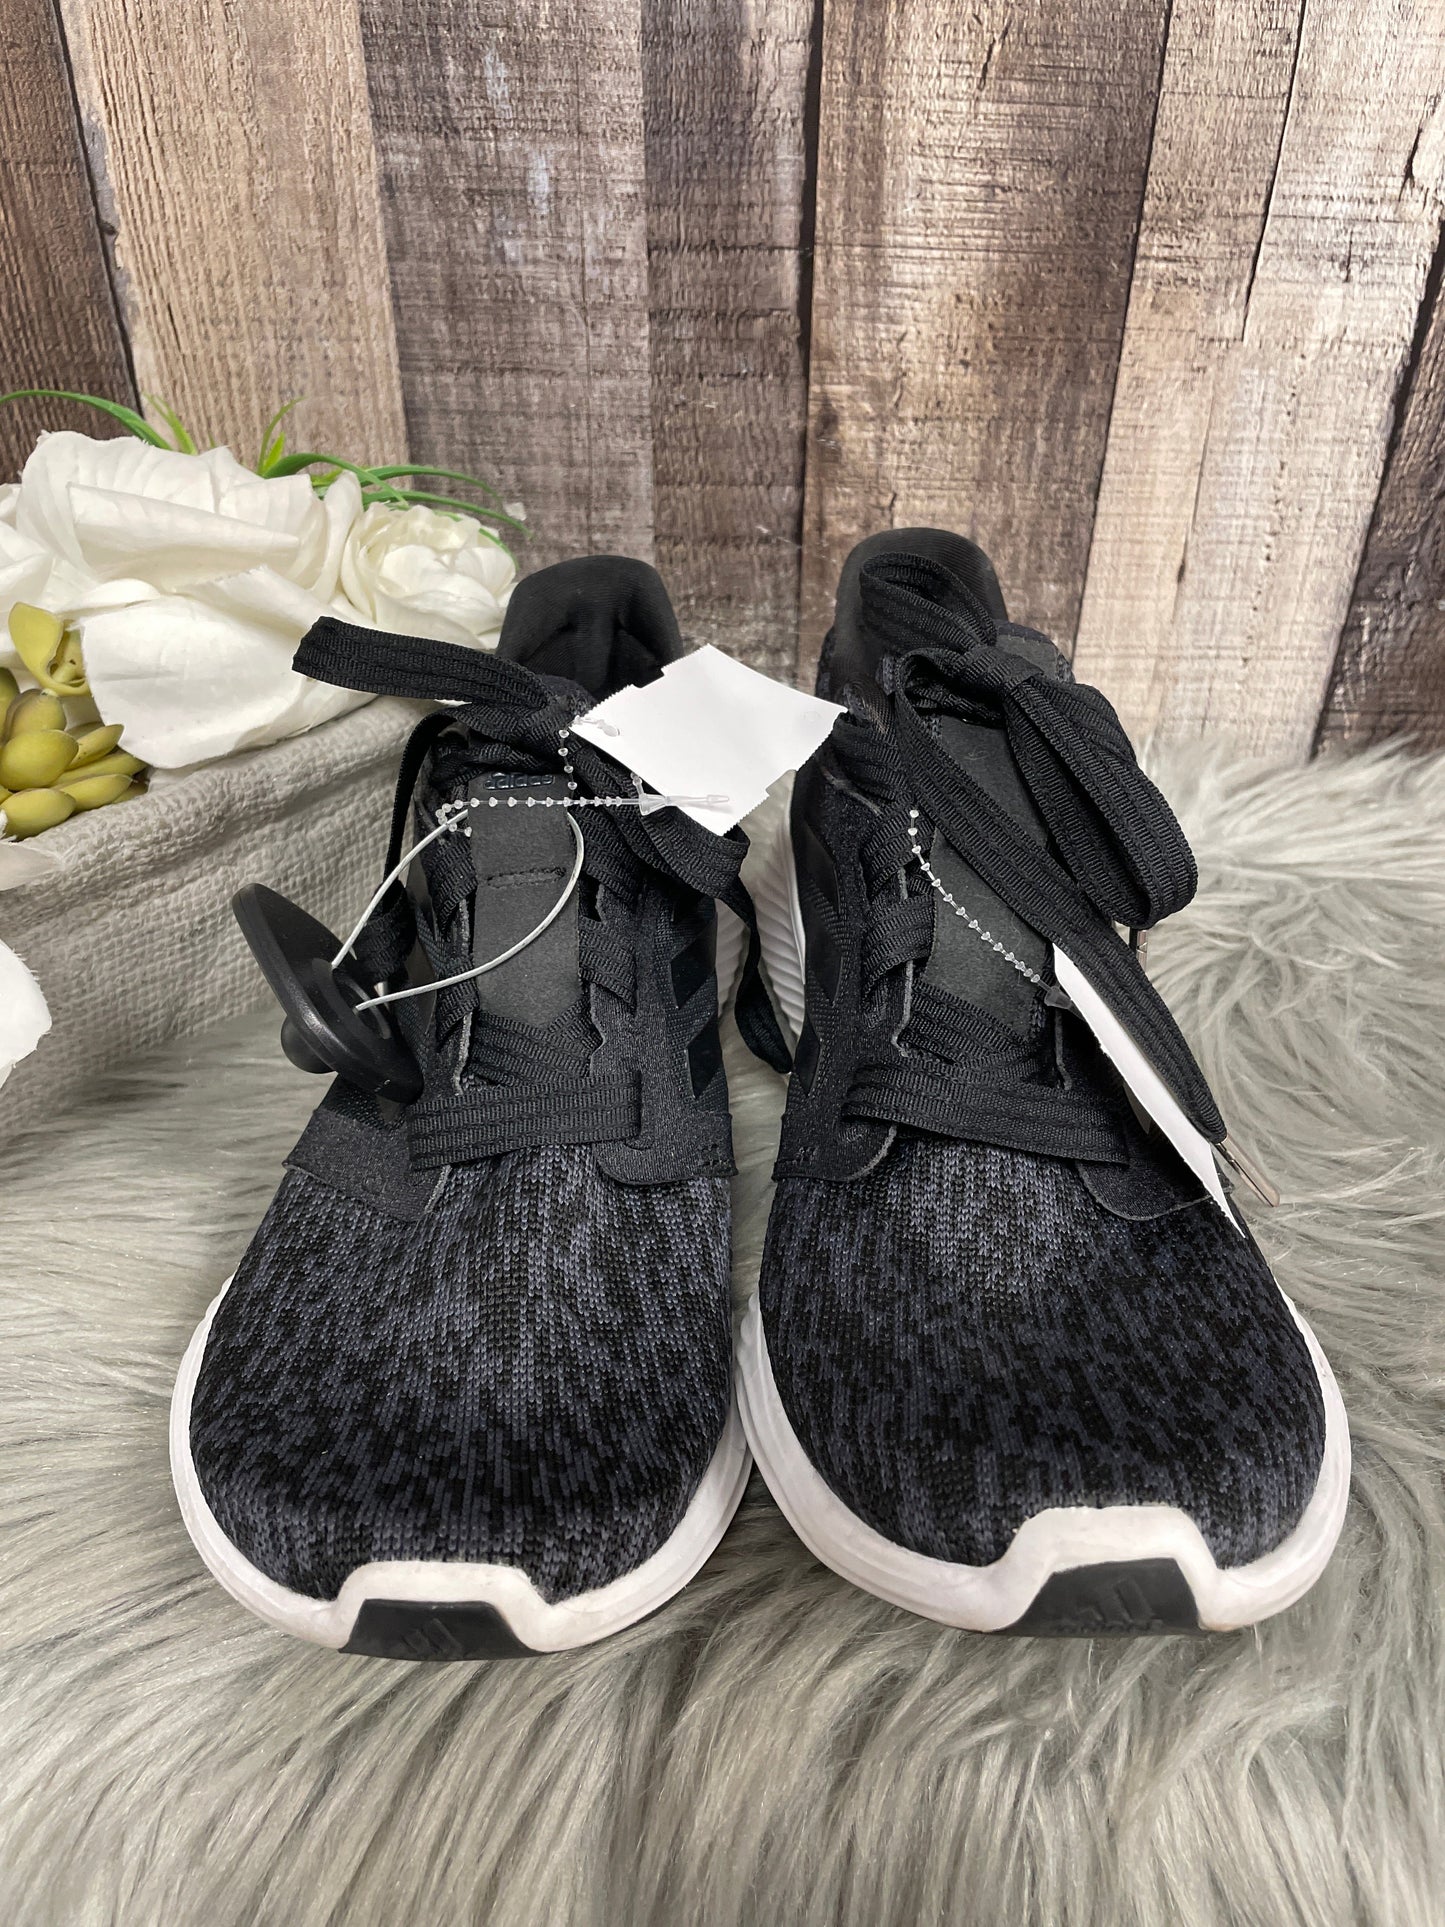 Black Shoes Athletic Adidas, Size 8.5